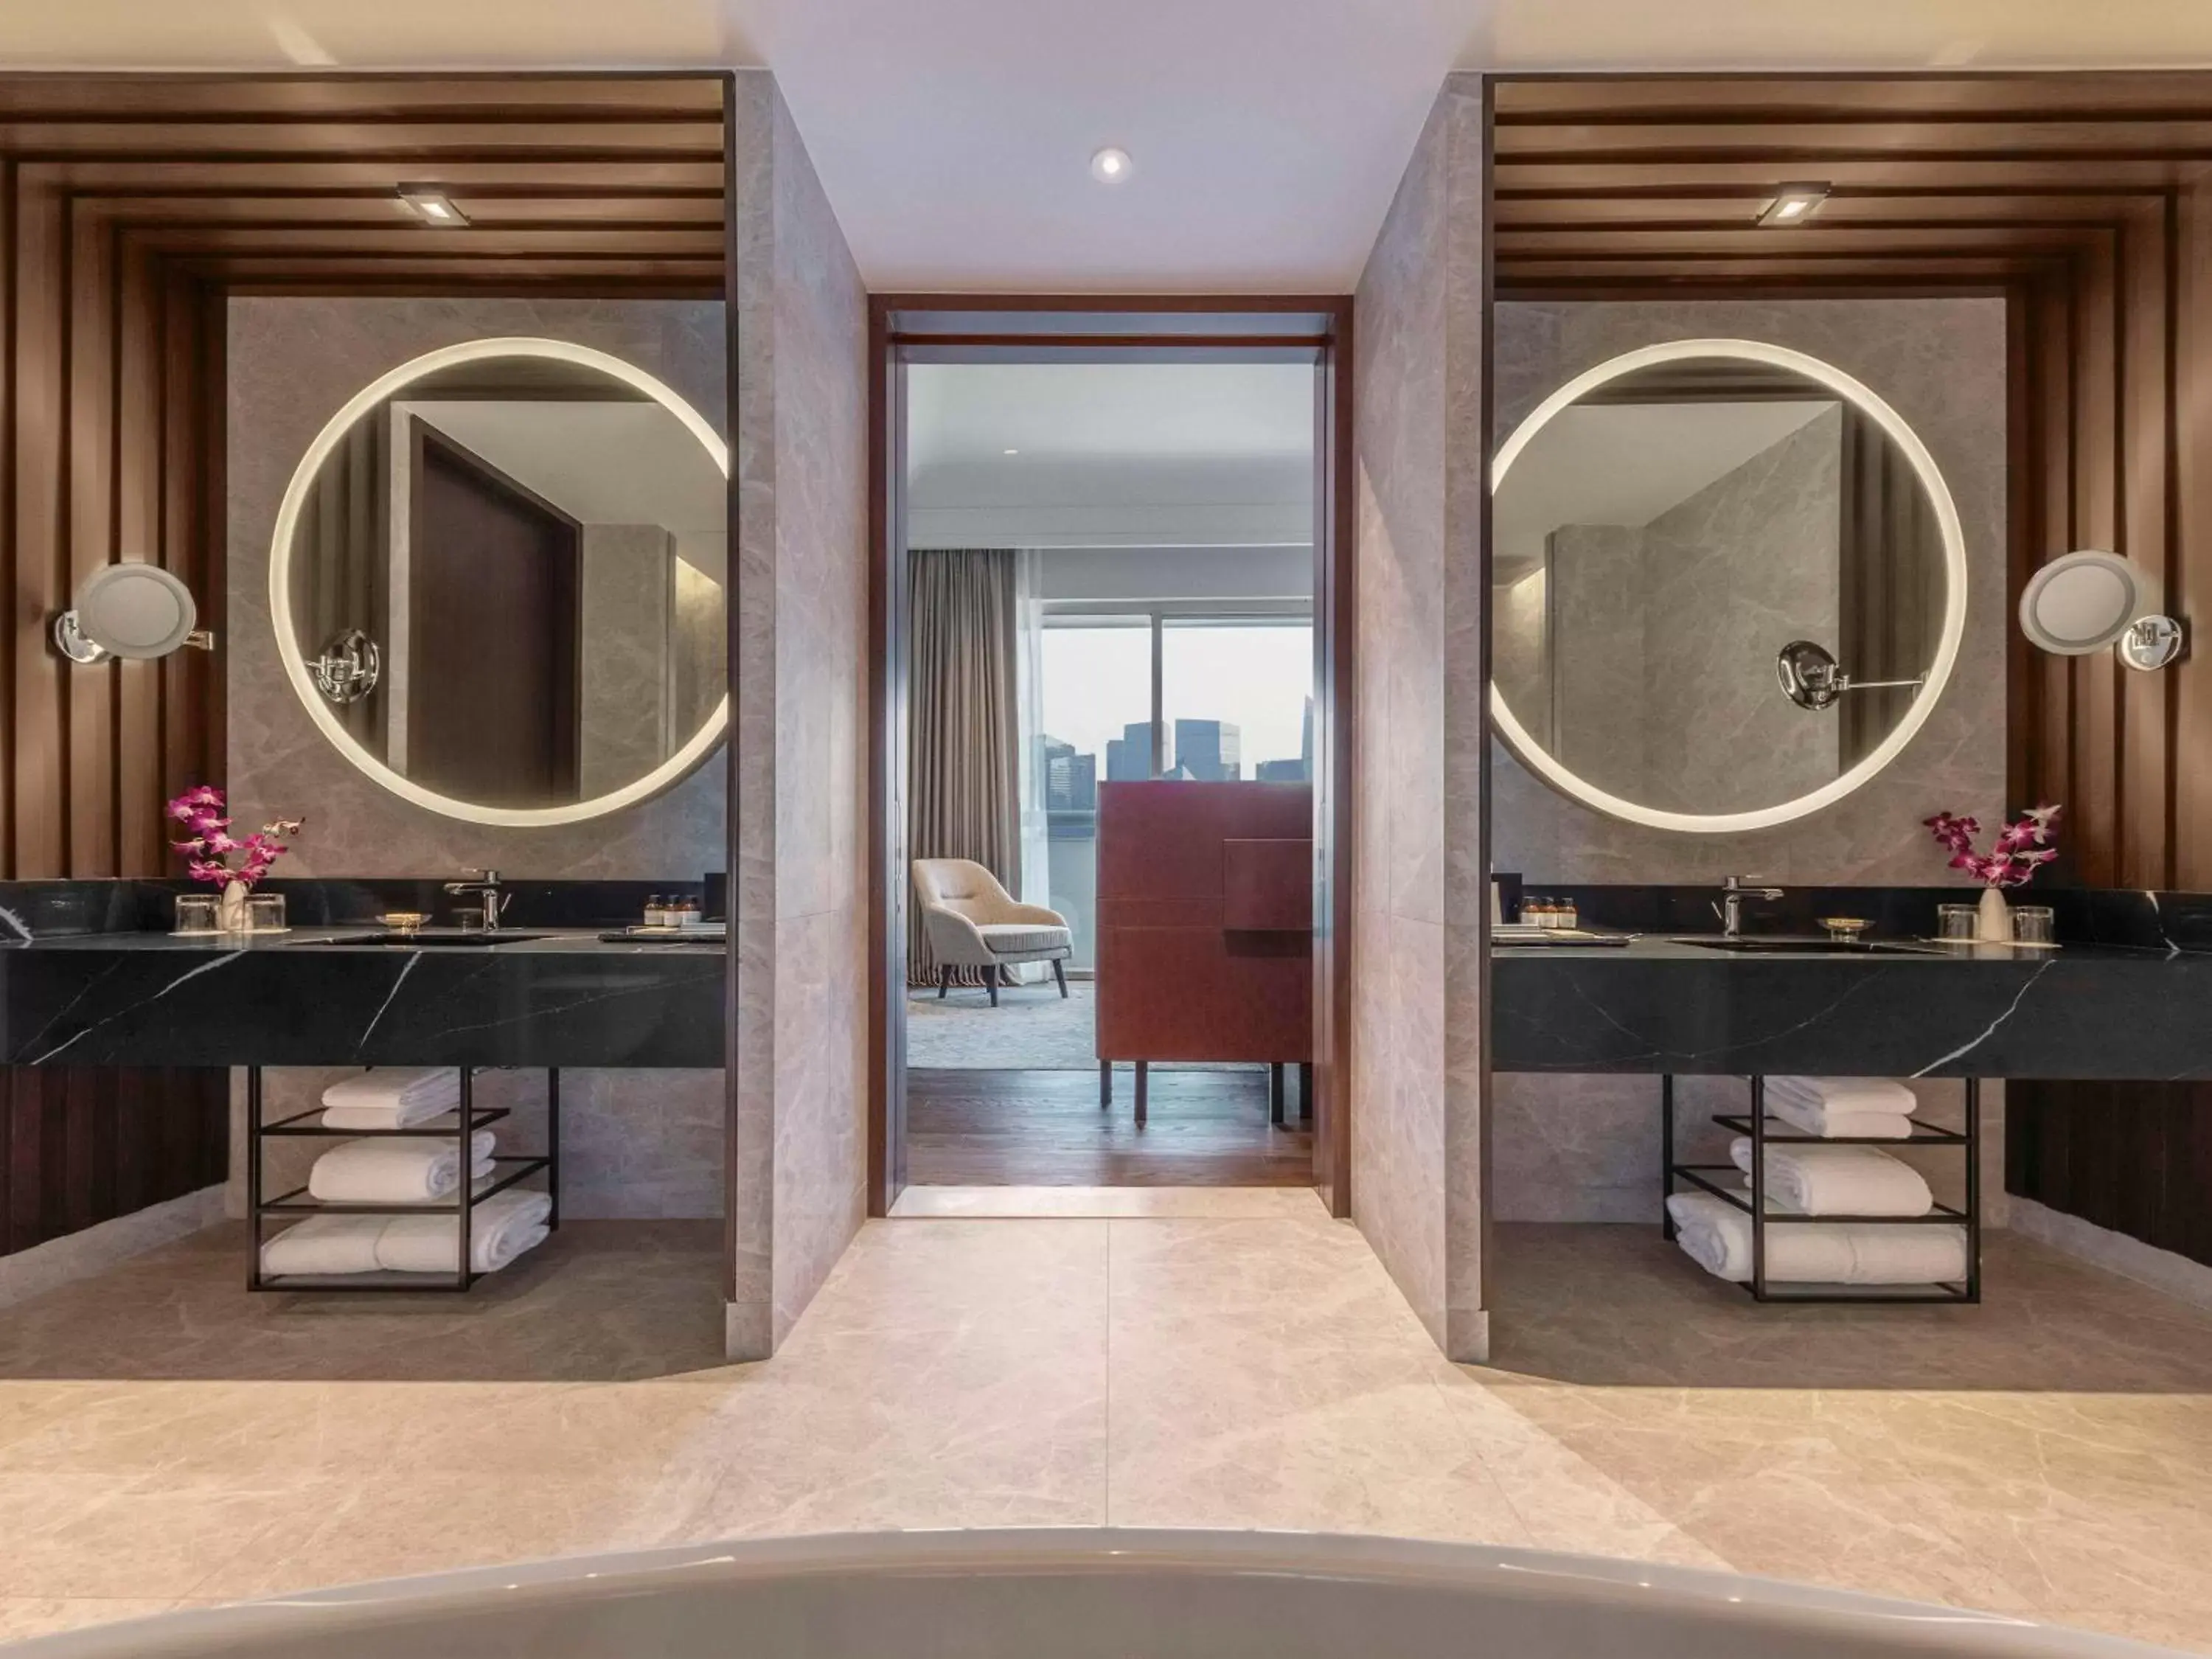 Bathroom in Fairmont Singapore